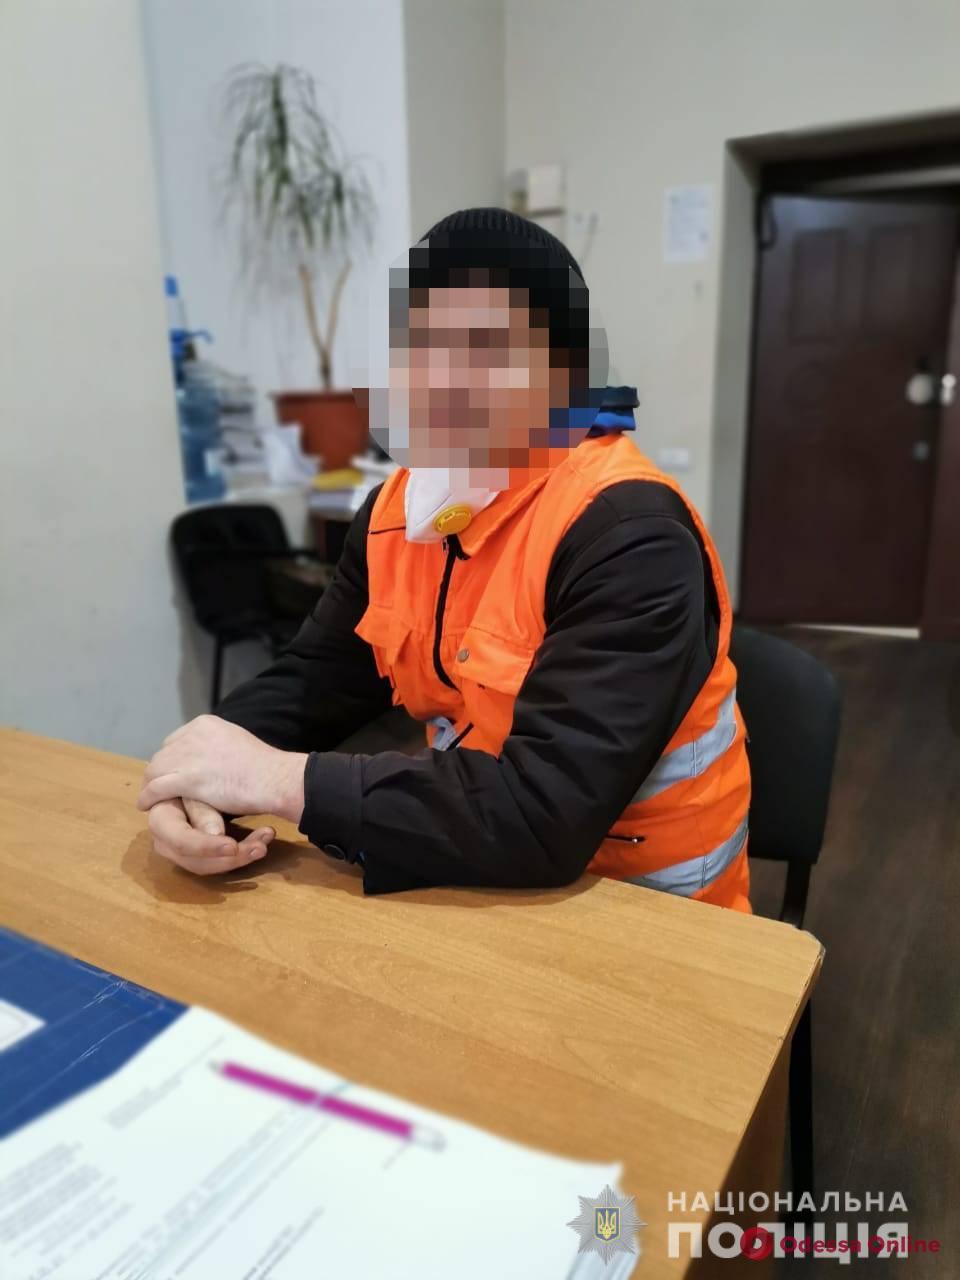 Хотел выразить недовольство: в Одессе поймали лжеминера коммунальных предприятий